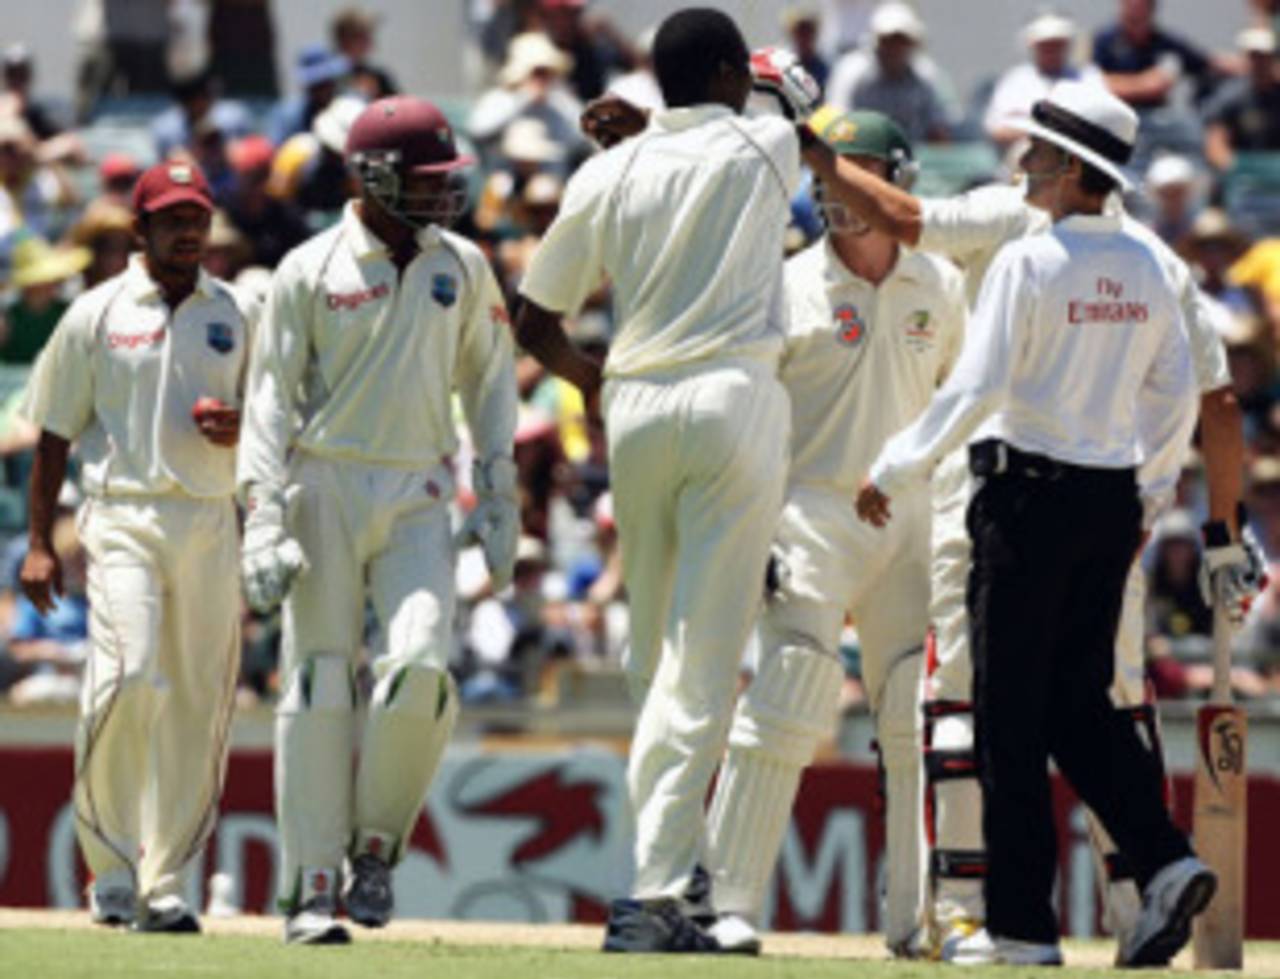 Mitchell Johnson pushes away Sulieman Benn, Australia v West Indies, 2nd Test, Perth, 17 December, 2009